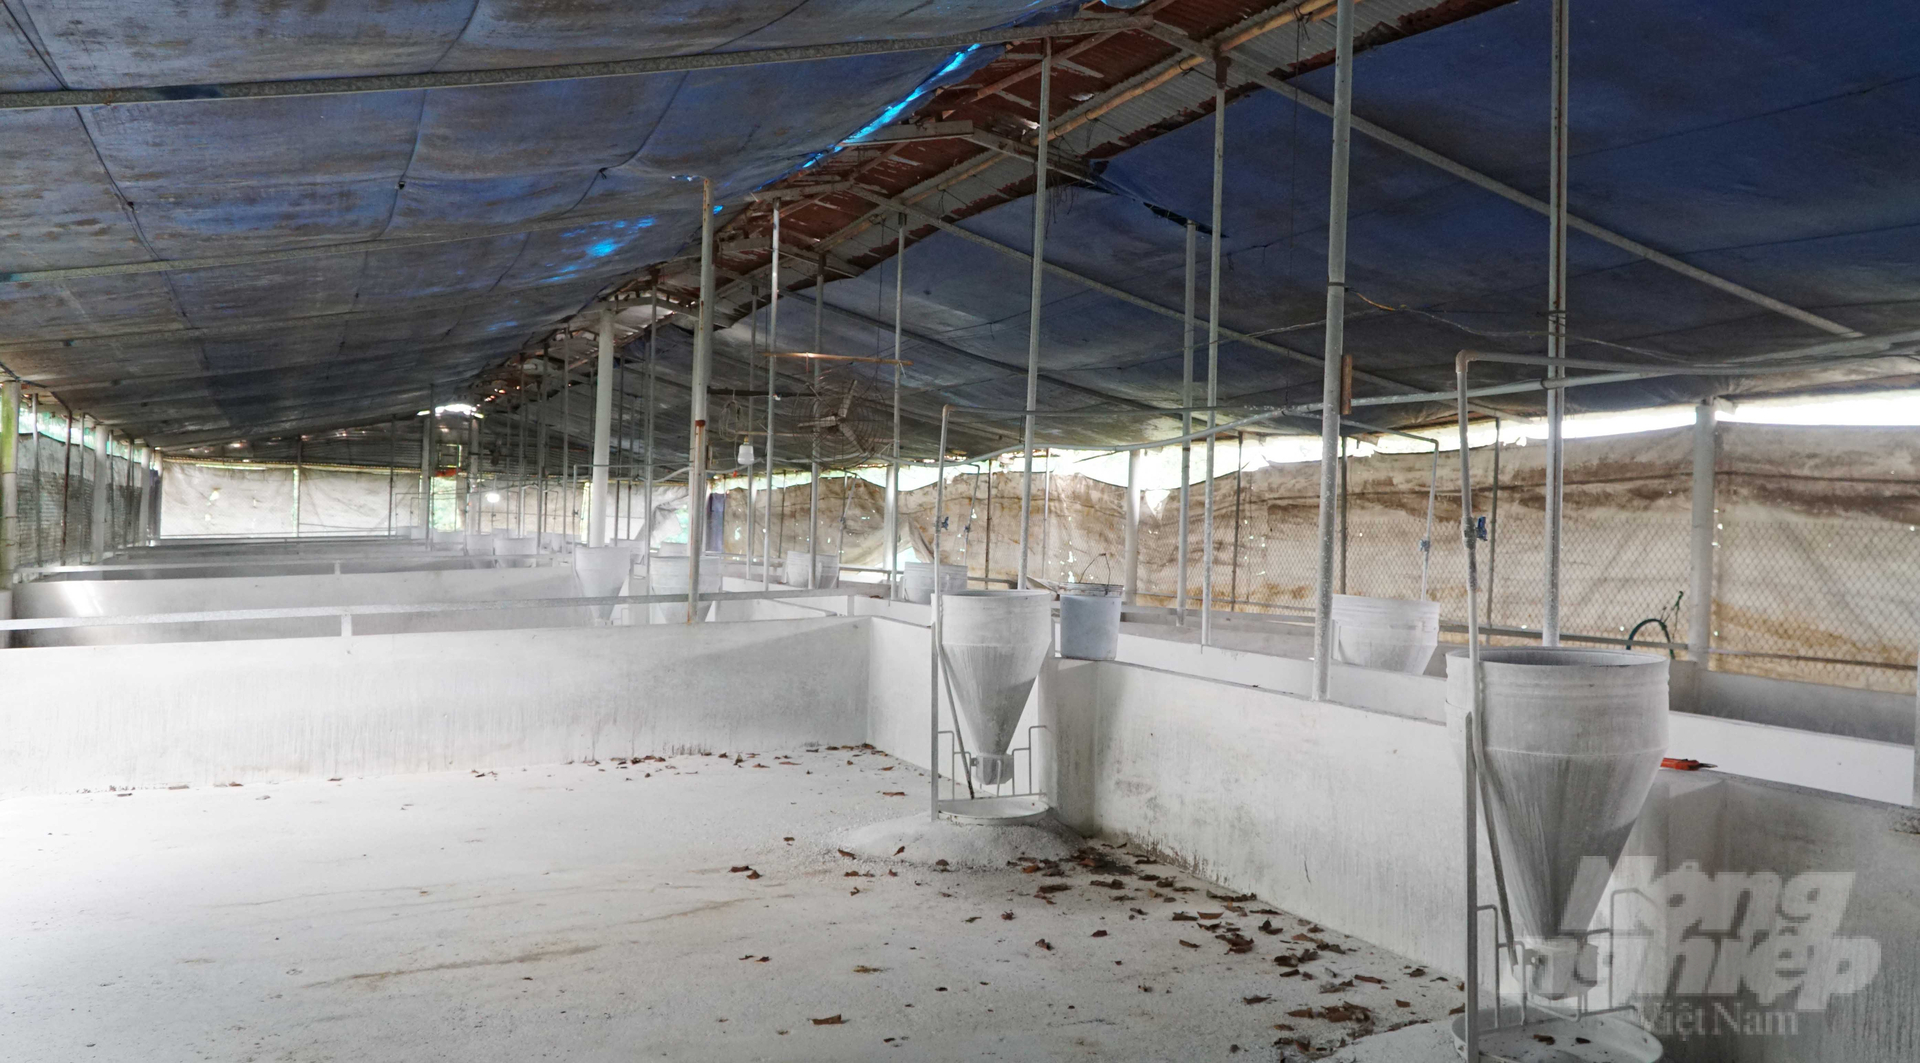 Hiện, có đến hàng trăm trang trại tại Đồng Nai đang bỏ trống chuồng do vướng quy định về đảm bảo môi trường, có nguy cơ không kịp tái đàn cho dịp Tết Nguyên đán. Ảnh: Lê Bình.